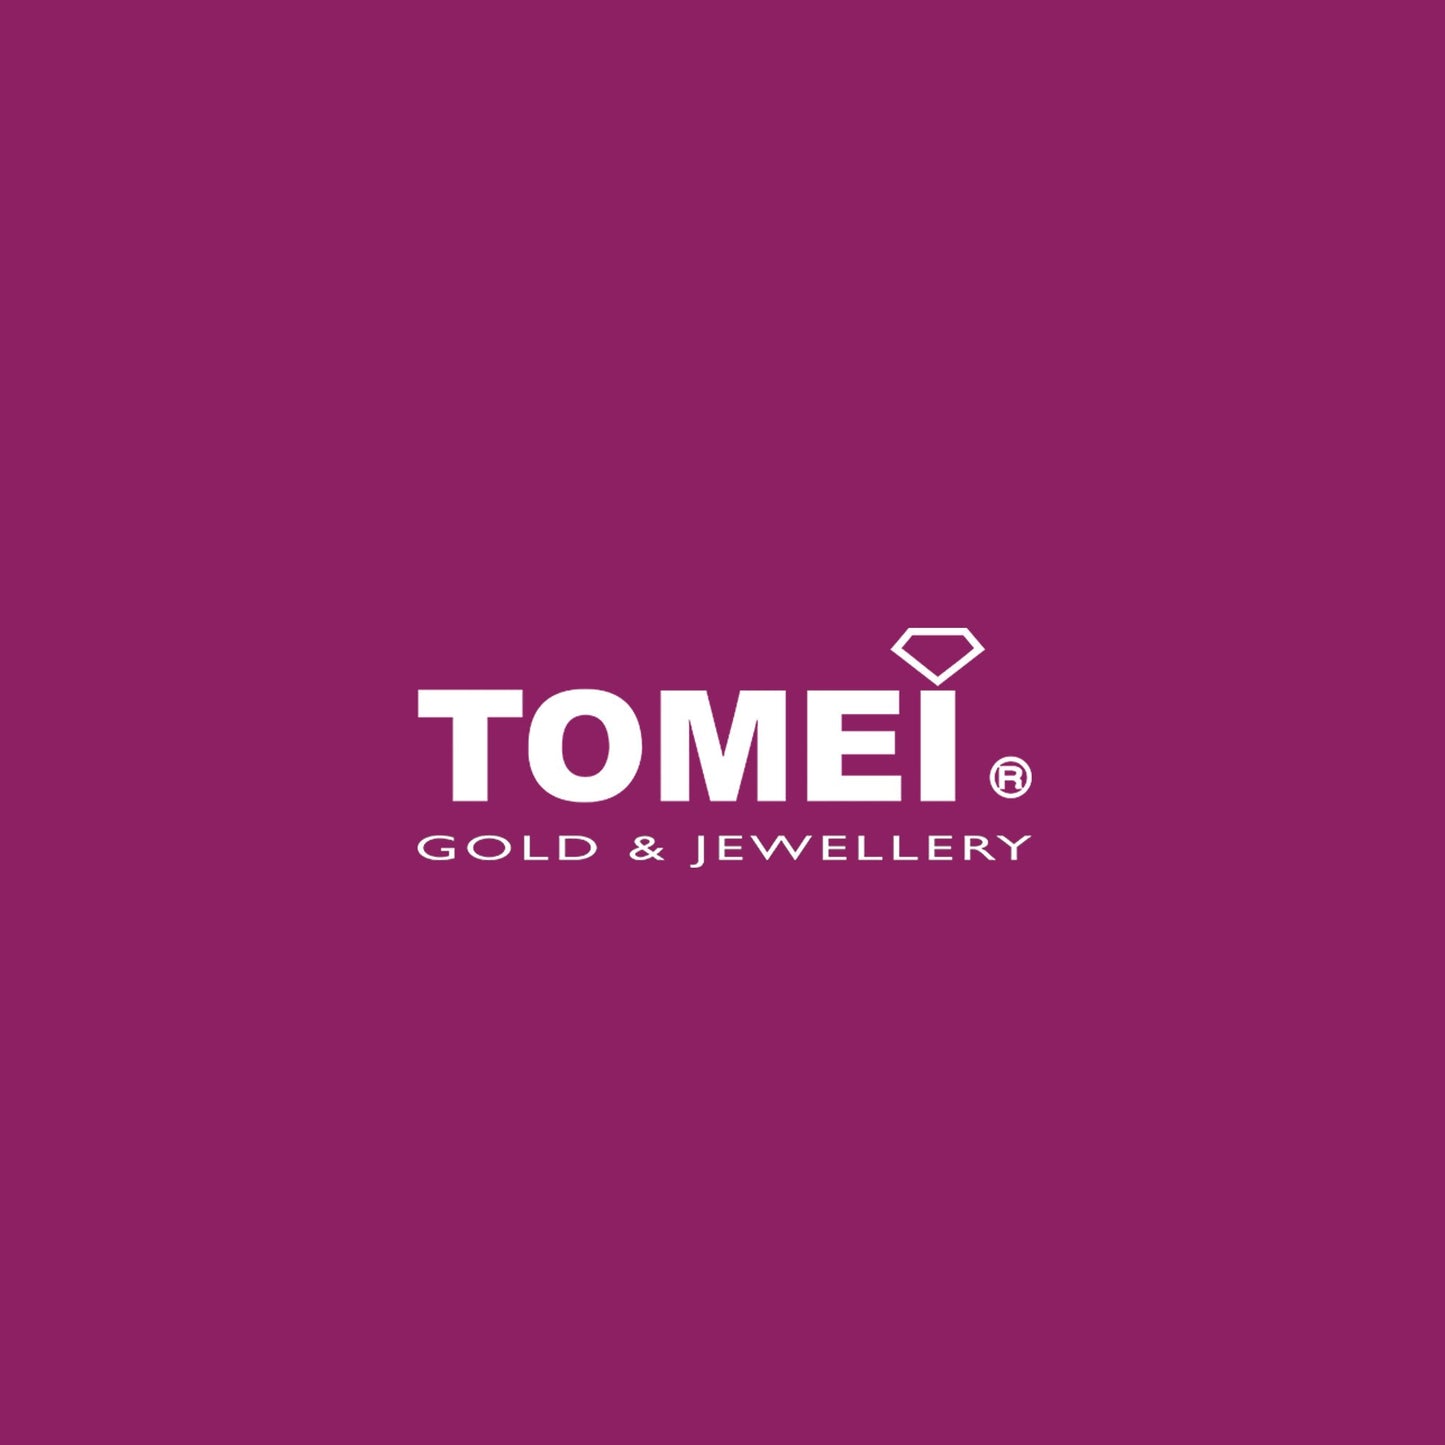 TOMEI Italia Beads Bracelet, White Gold 585